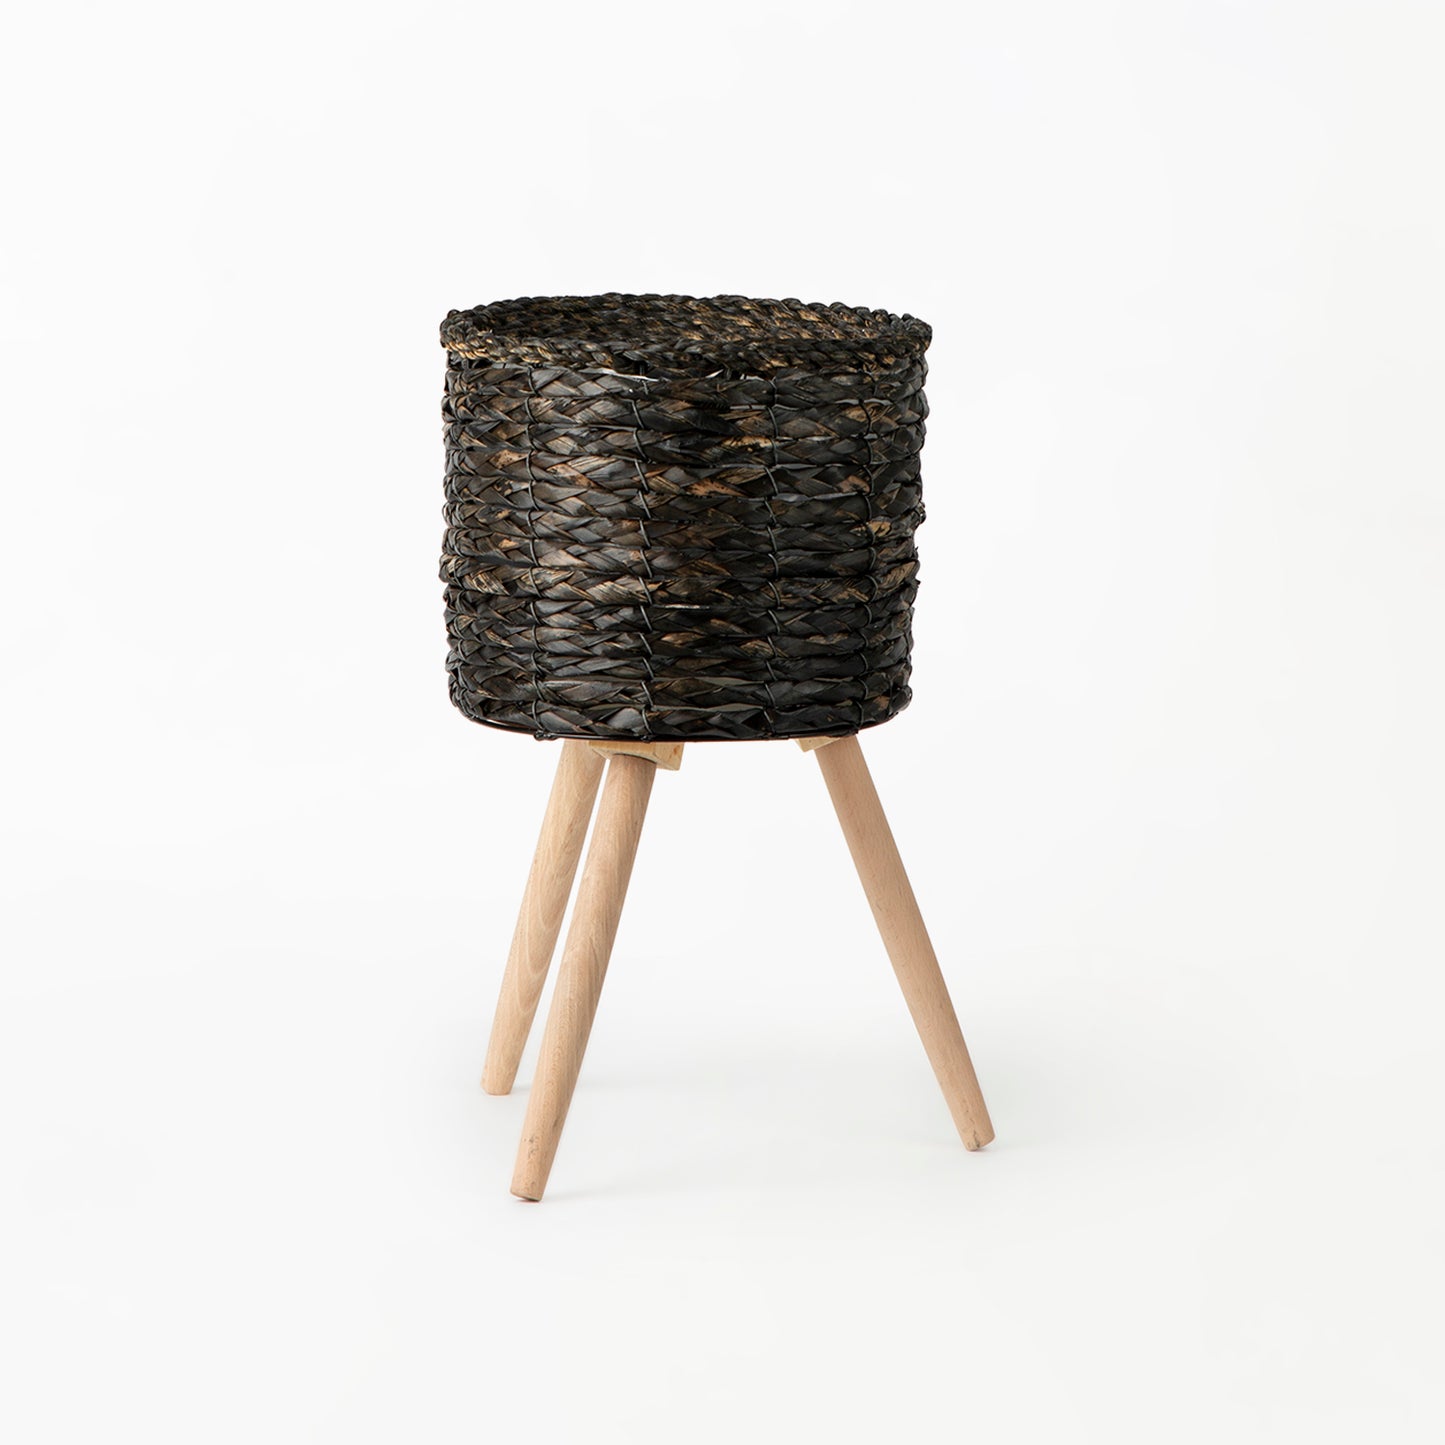 Black Basket on Wooden Stand